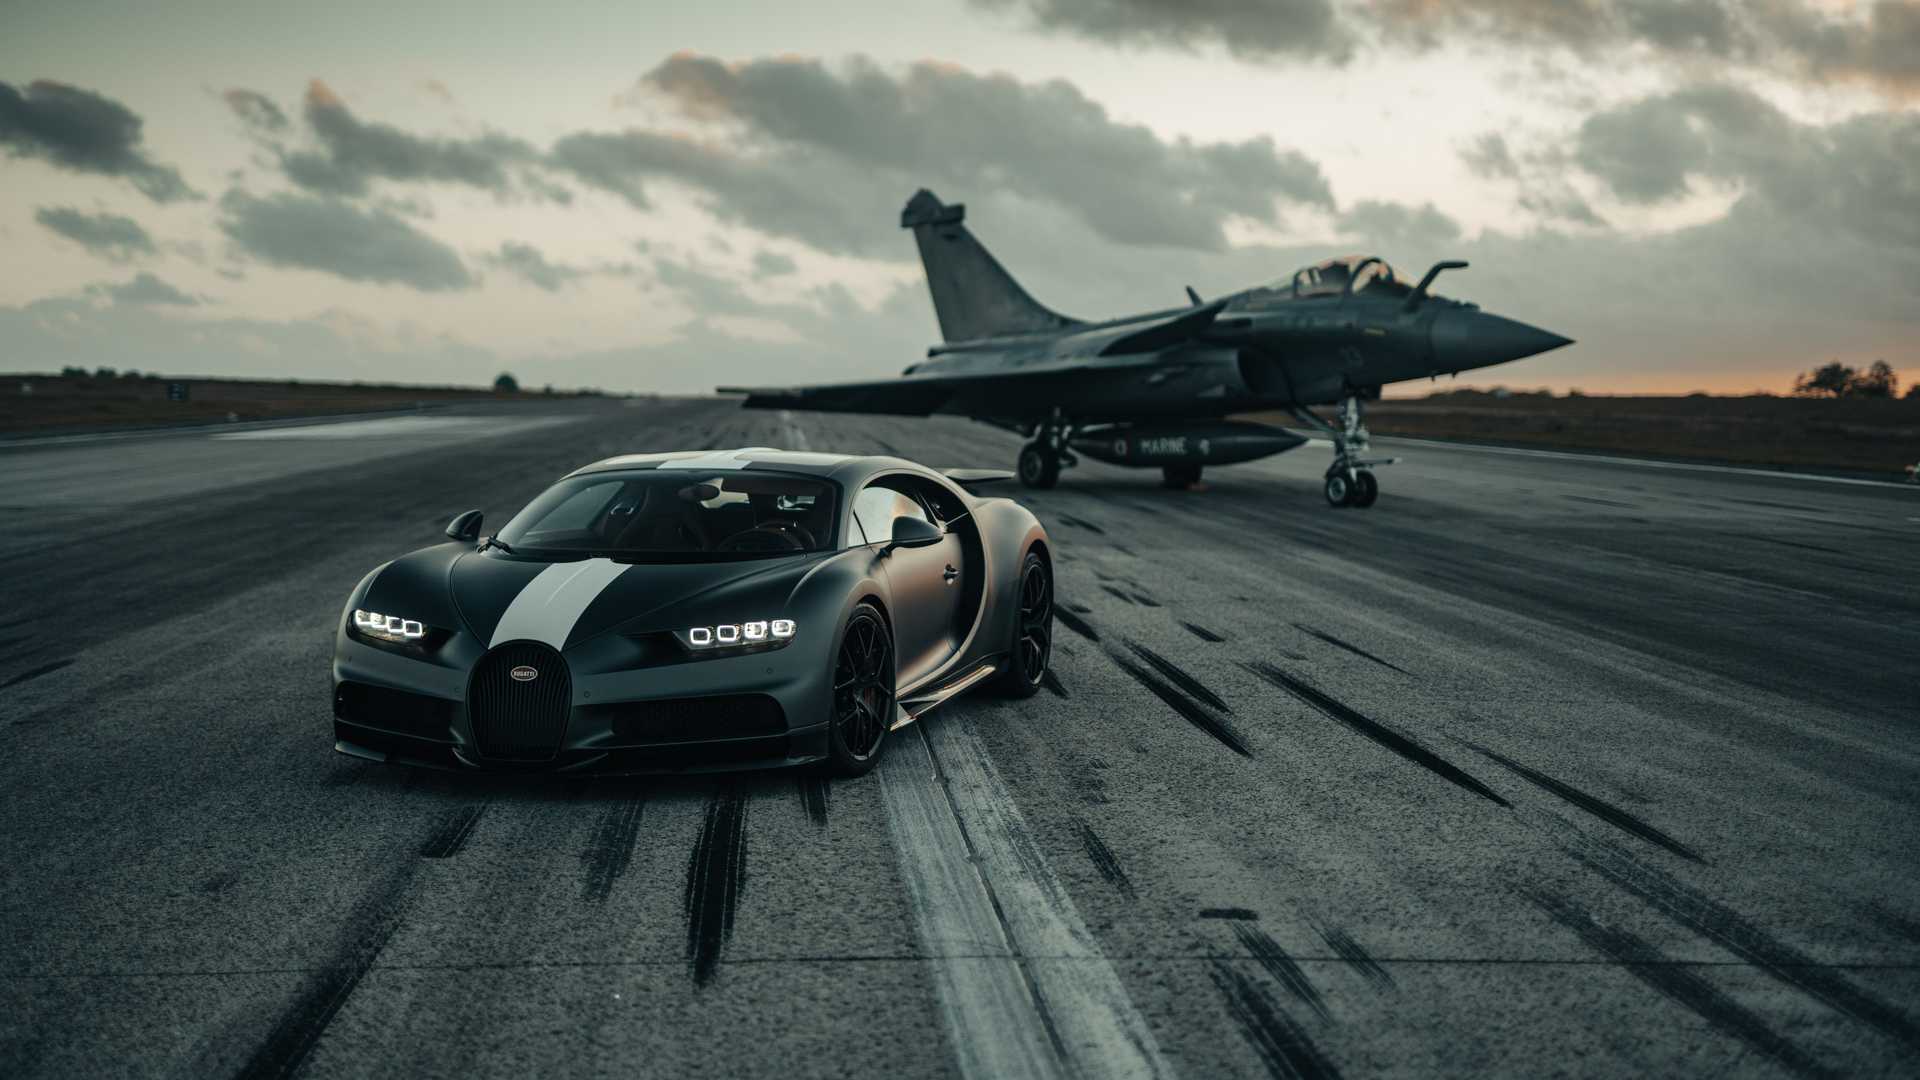 Siêu xe Bugatti đua với máy bay chiến đấu và cái kết làm bất ngờ tất cả - Ảnh 1.